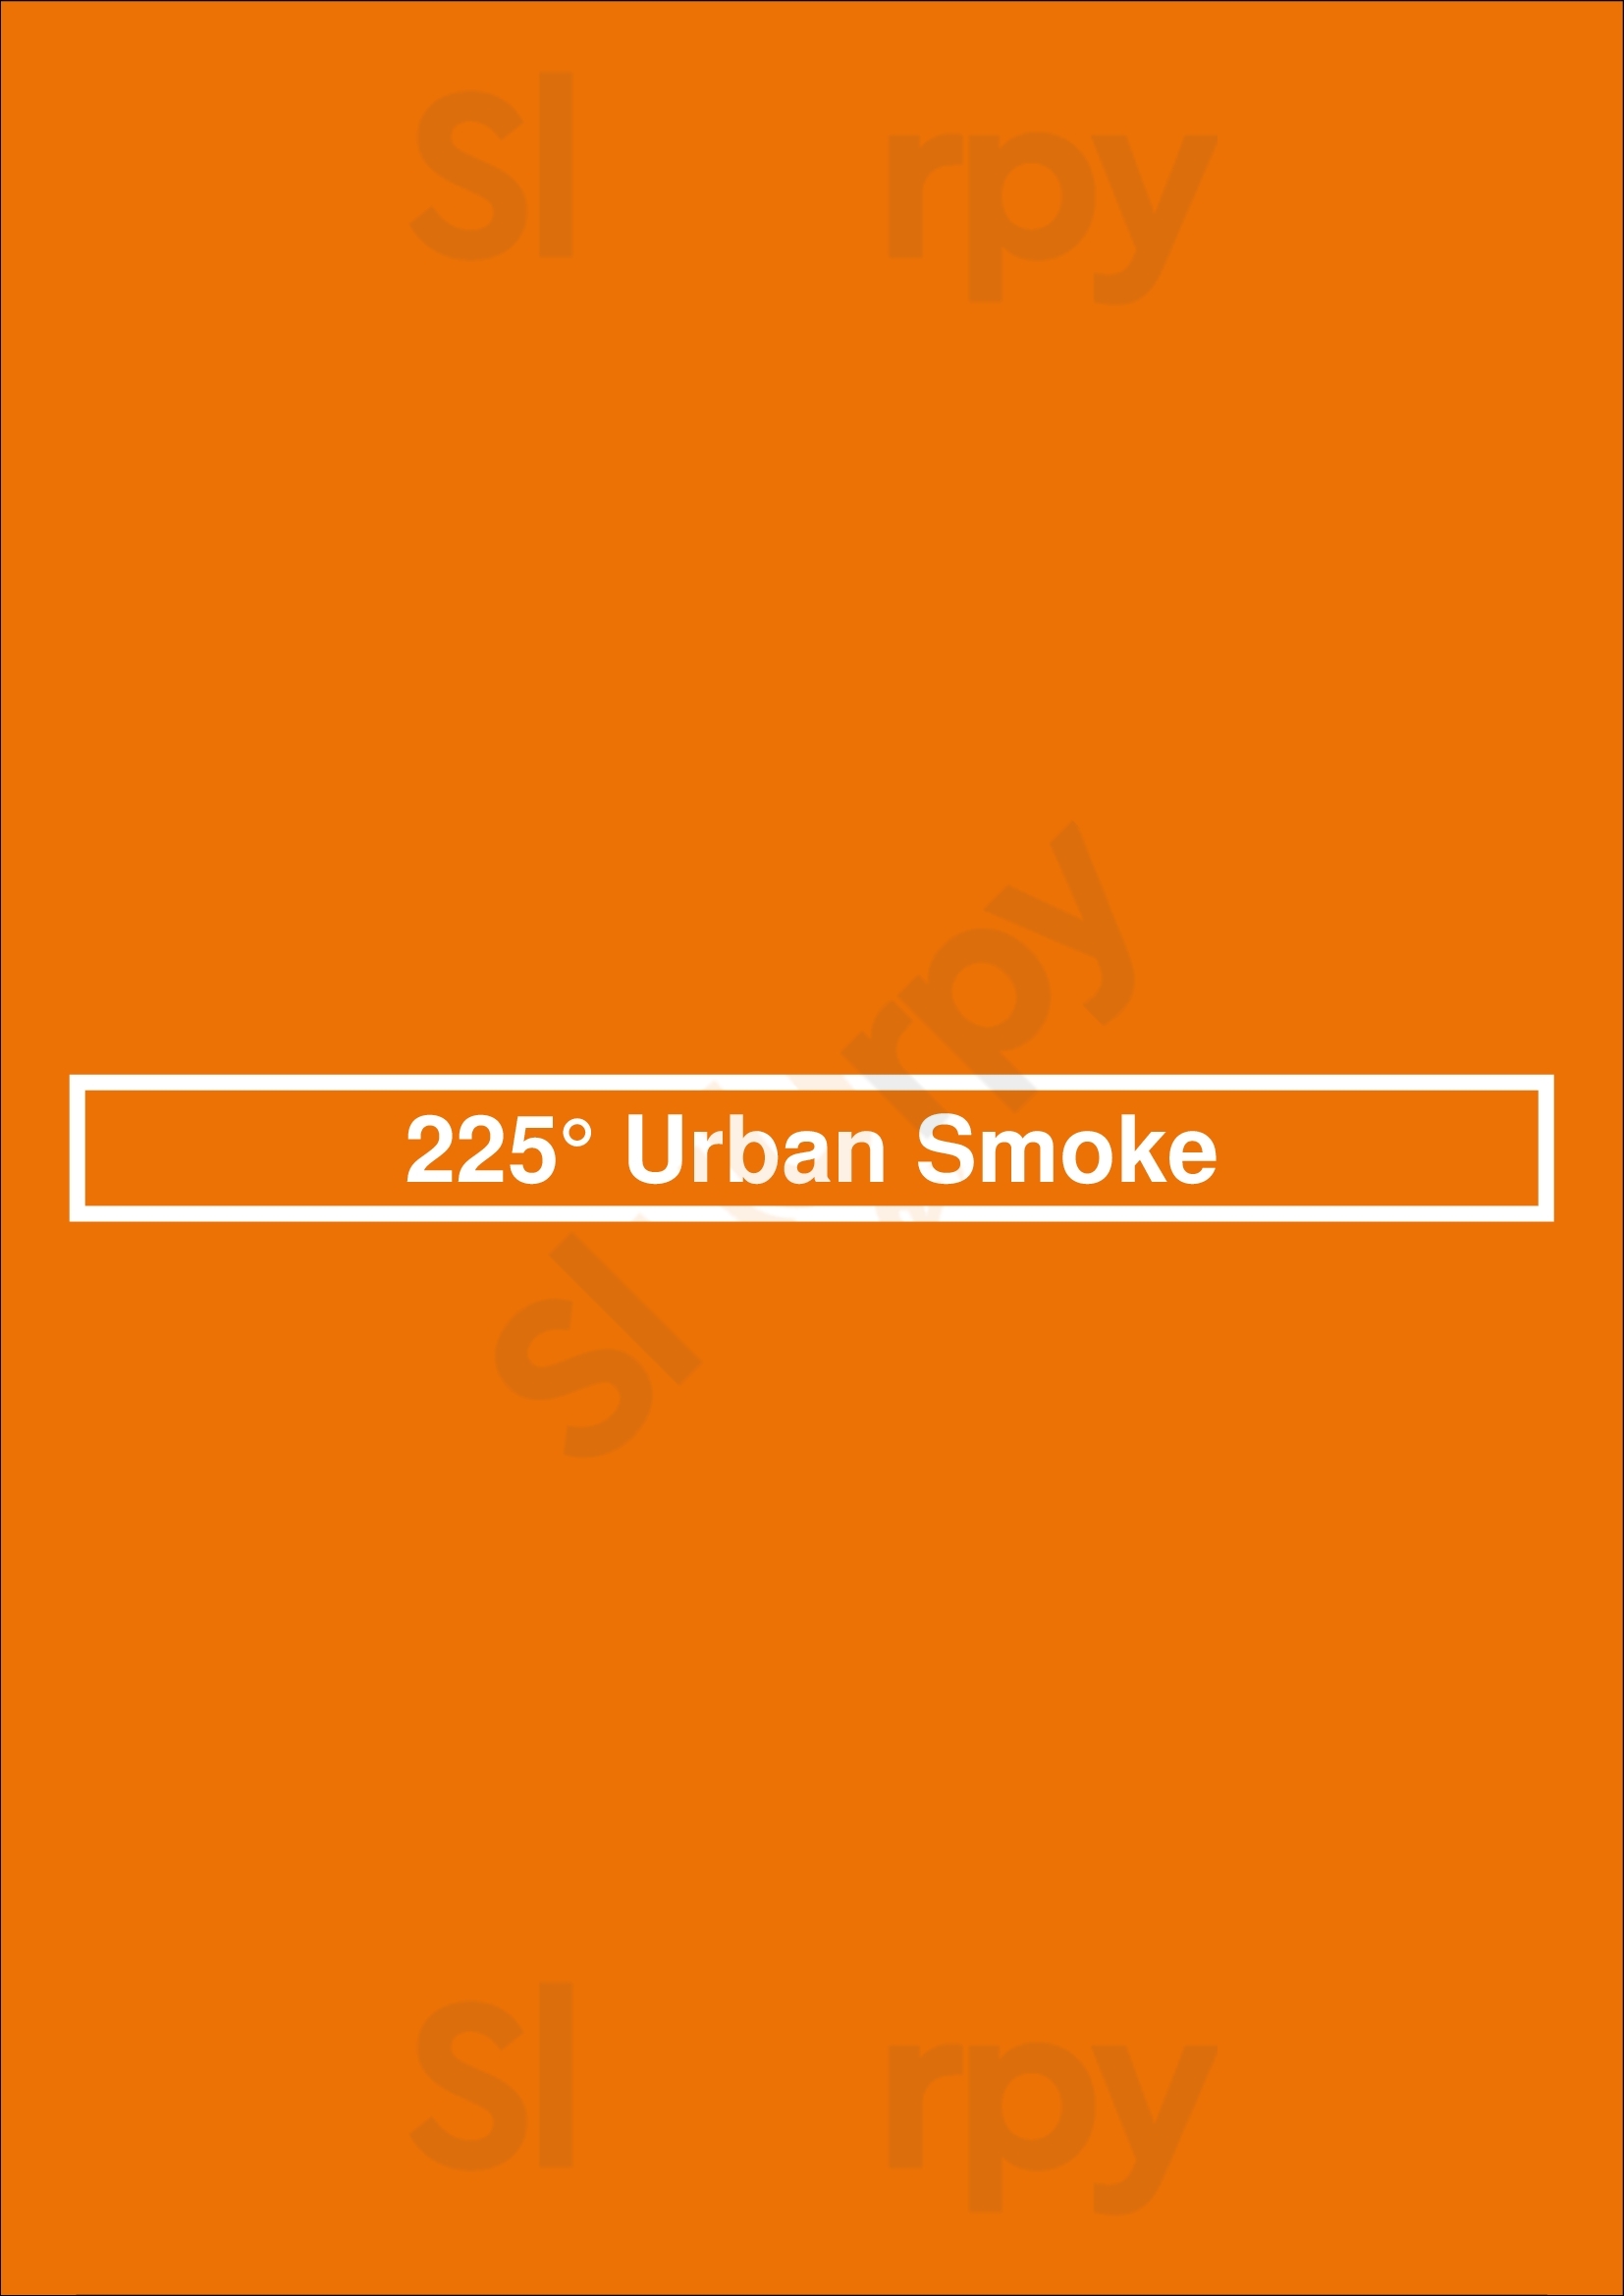 225° Urban Smoke San Antonio Menu - 1